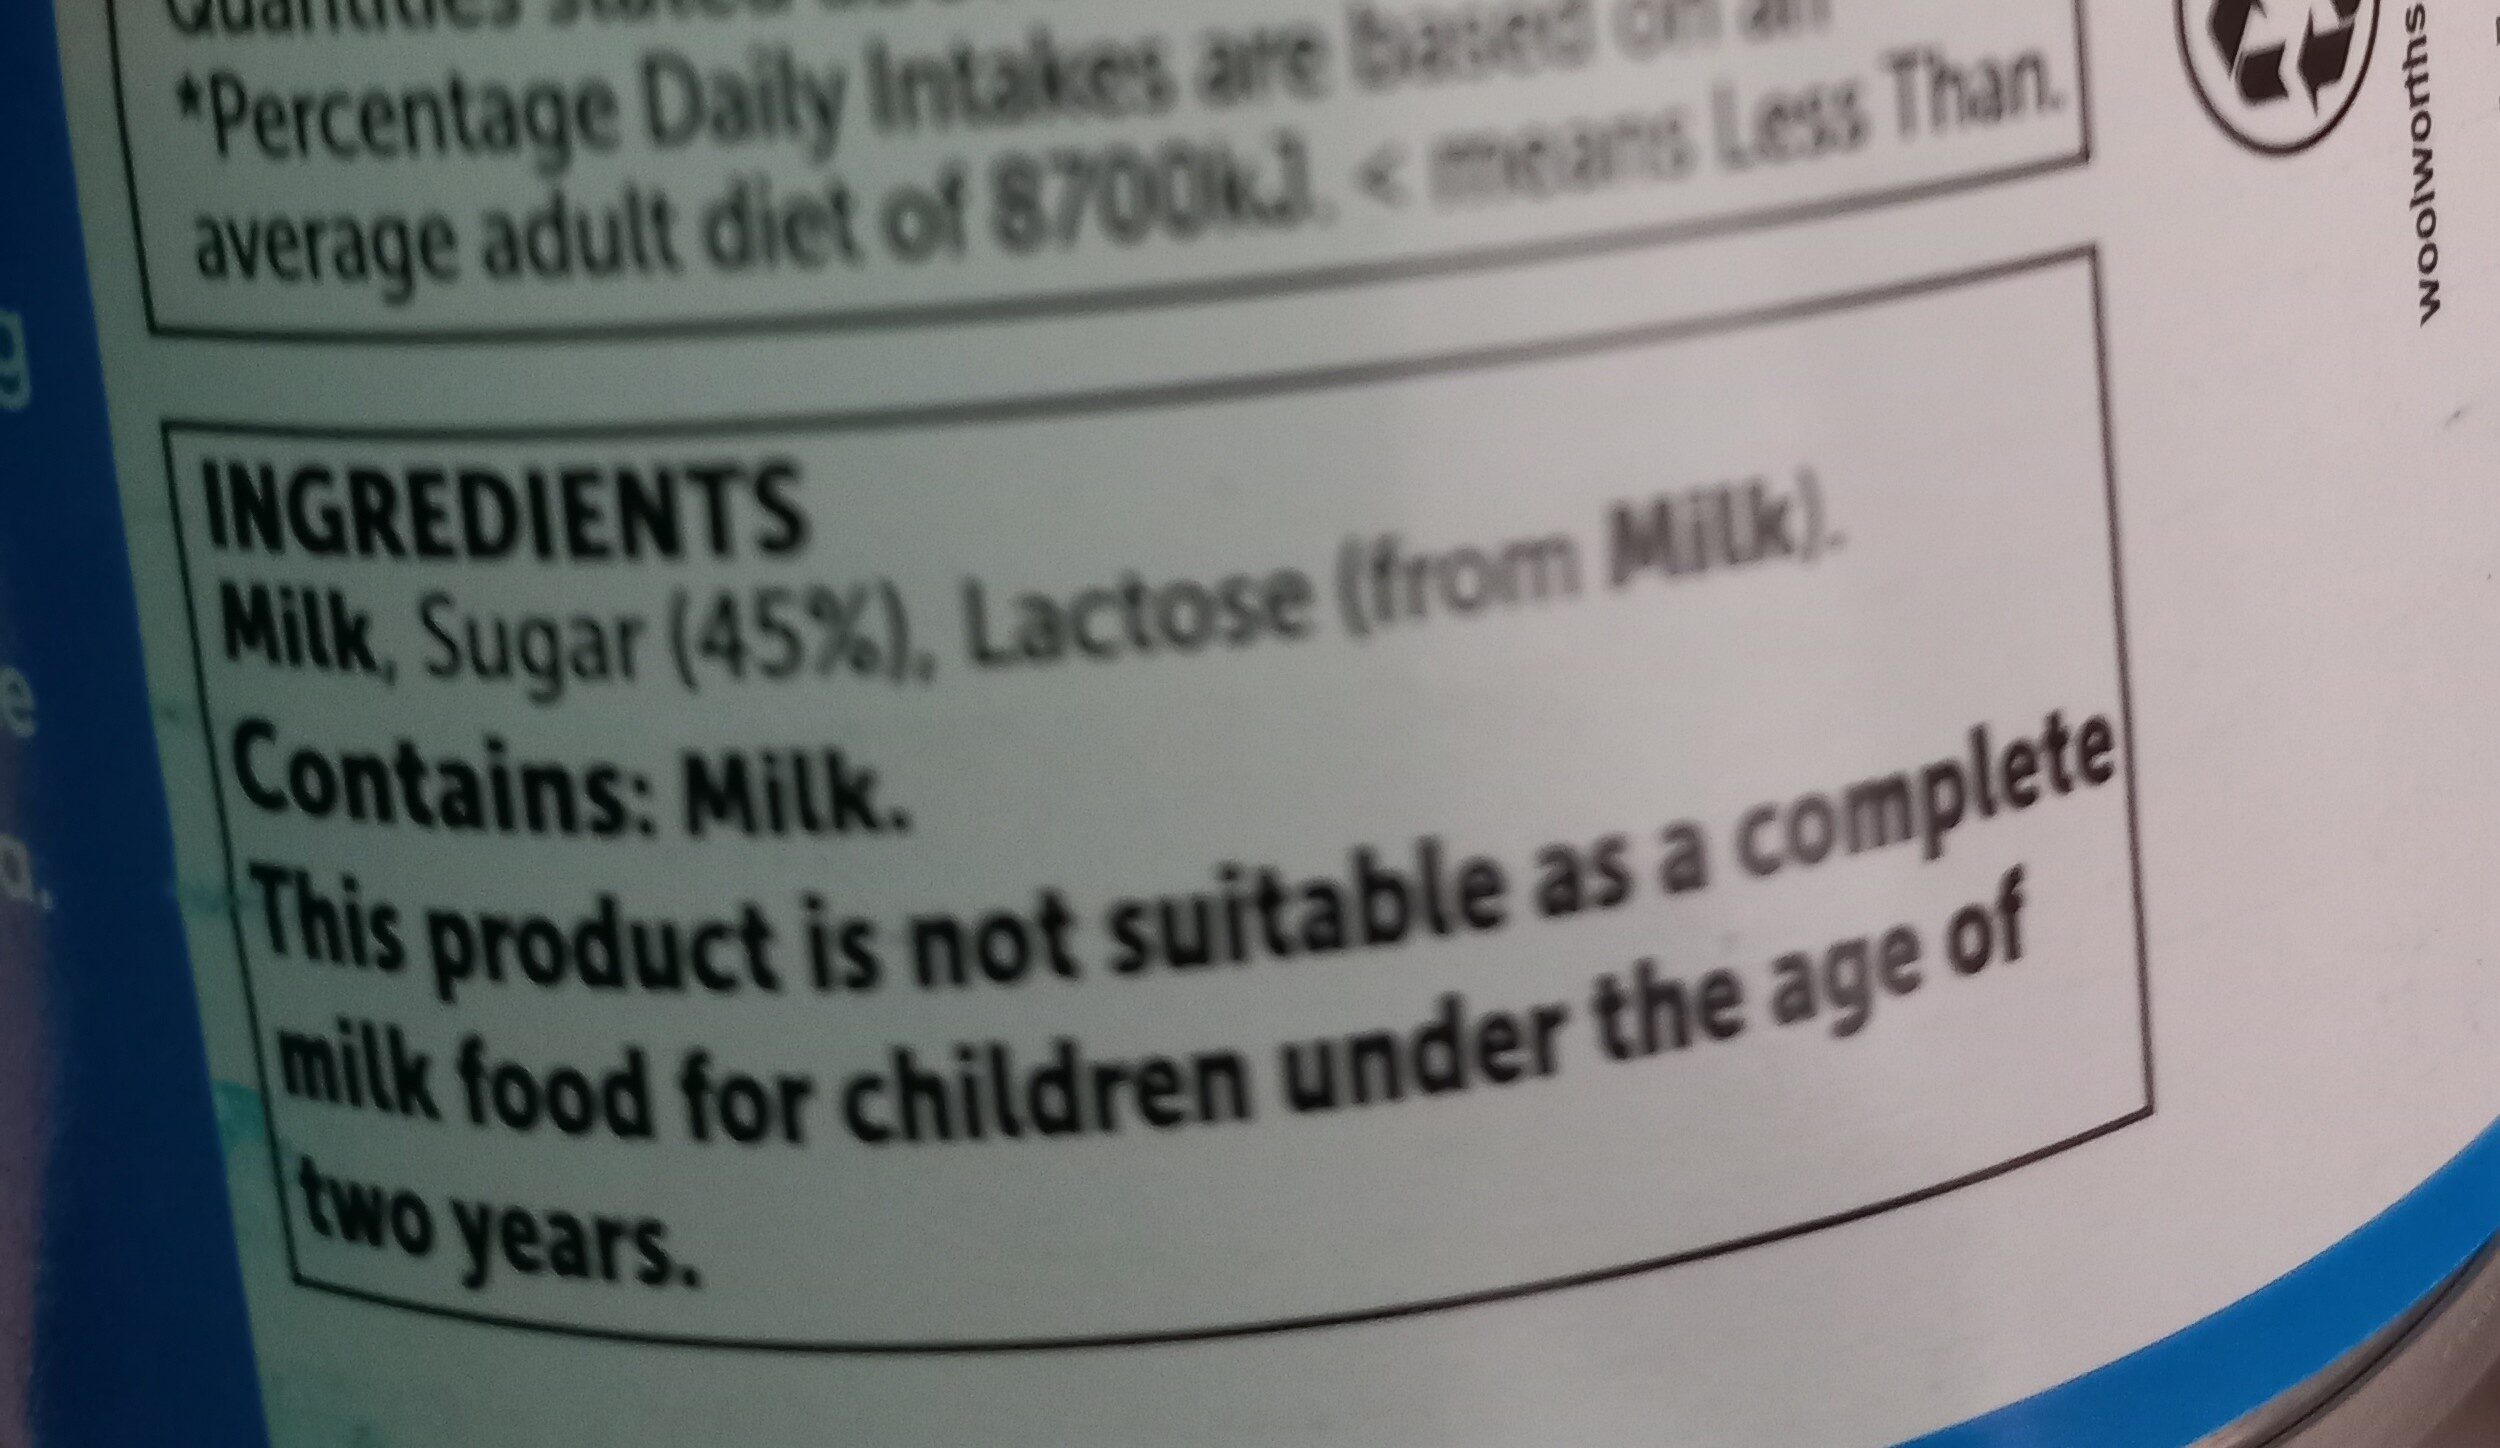 sweetened condensed milk - Ingredients